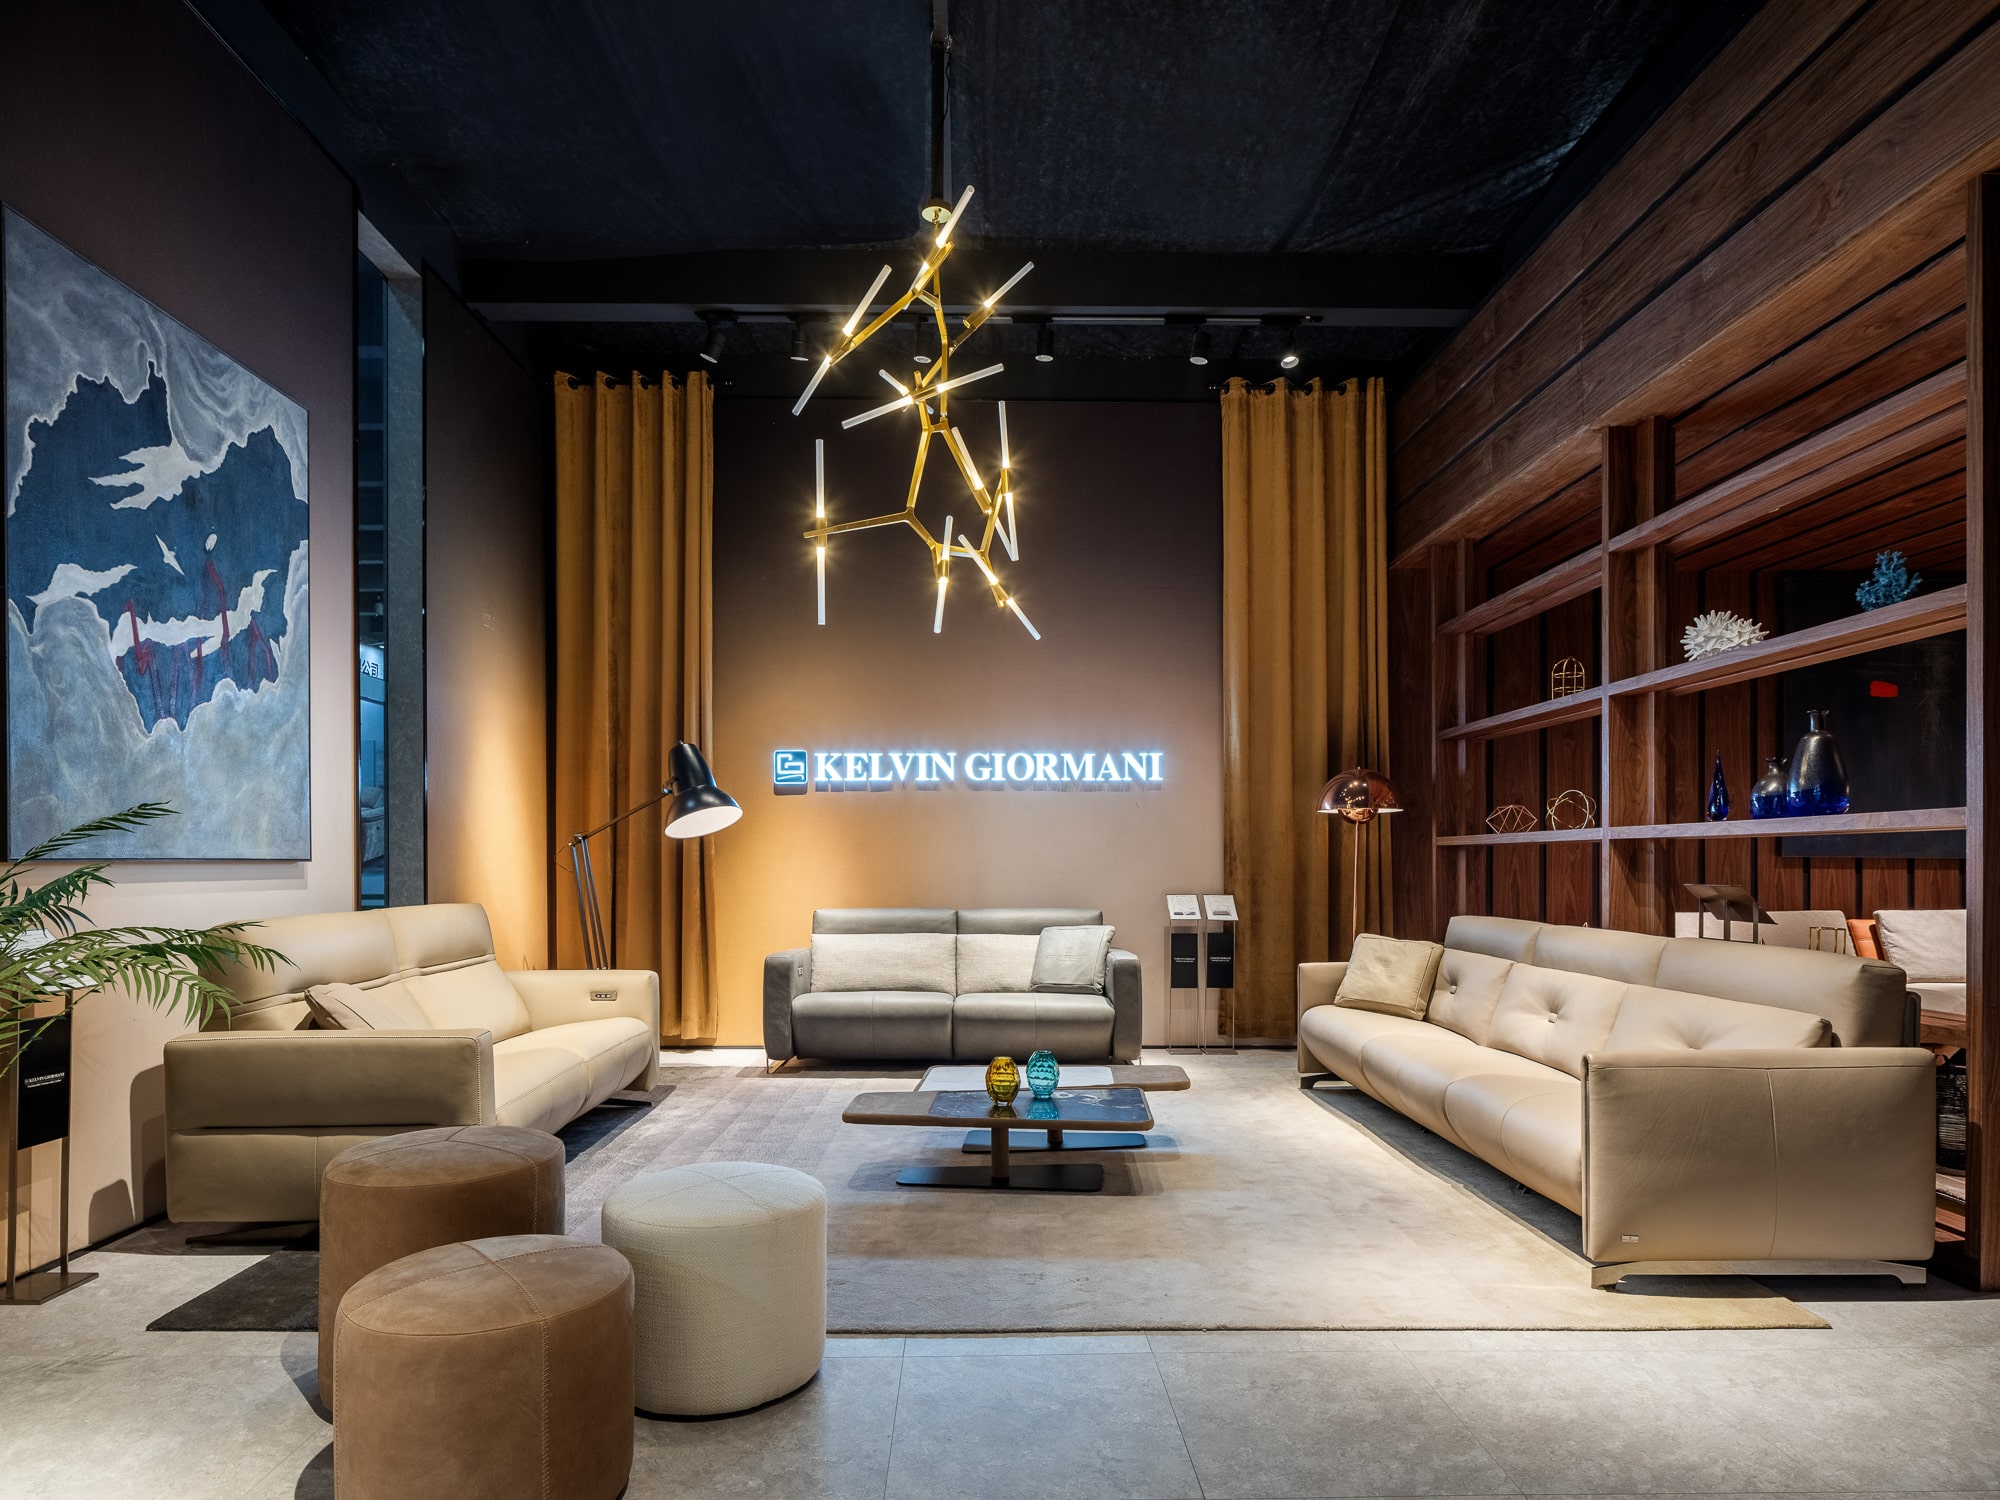 Nuestro estudio participa en la feria del mueble CIFF Furniture de Guangzhou con el diseño del stand y el catálogo de Kelvin Giormani.